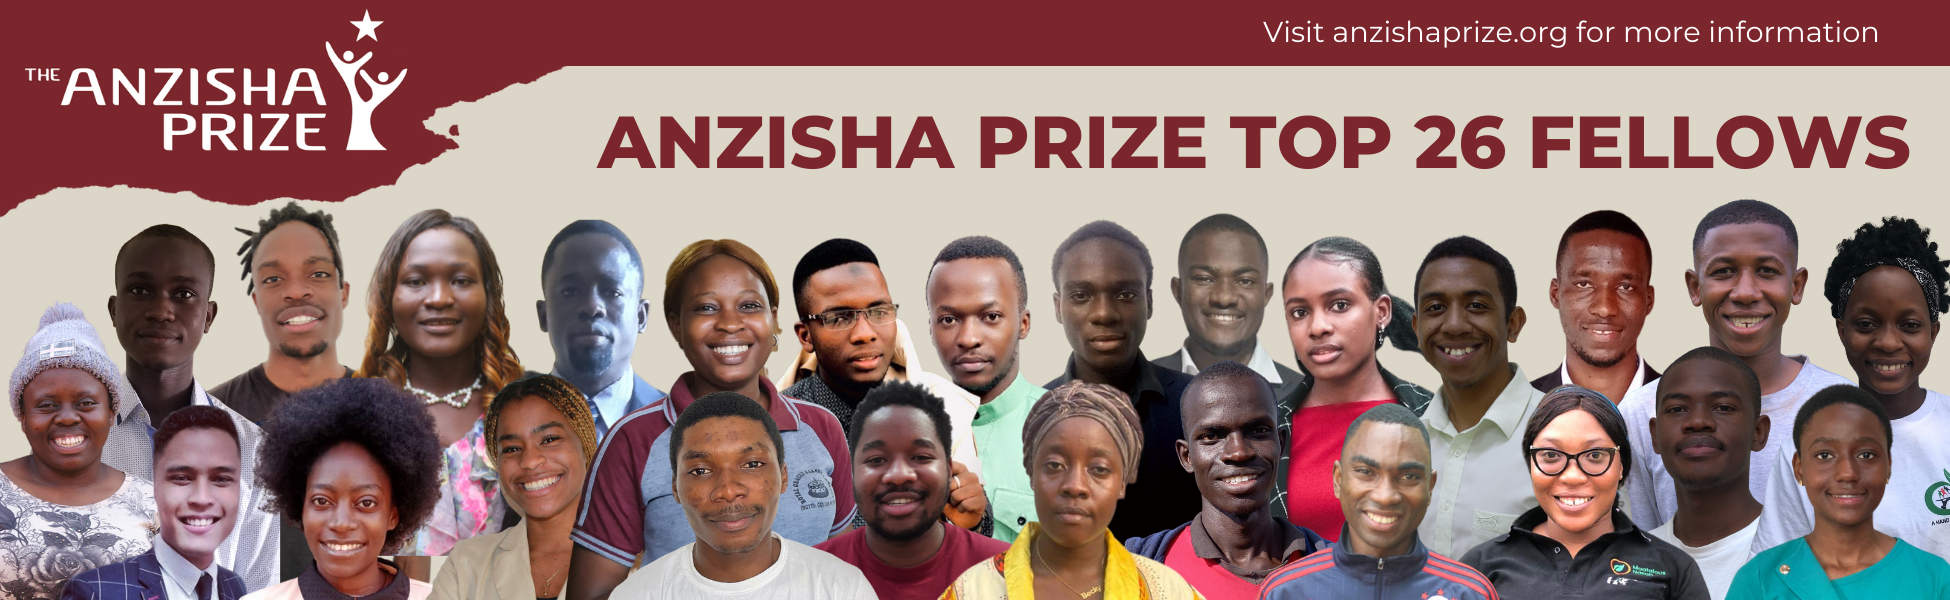 Anzisha Prize Top 26 Fellows 2